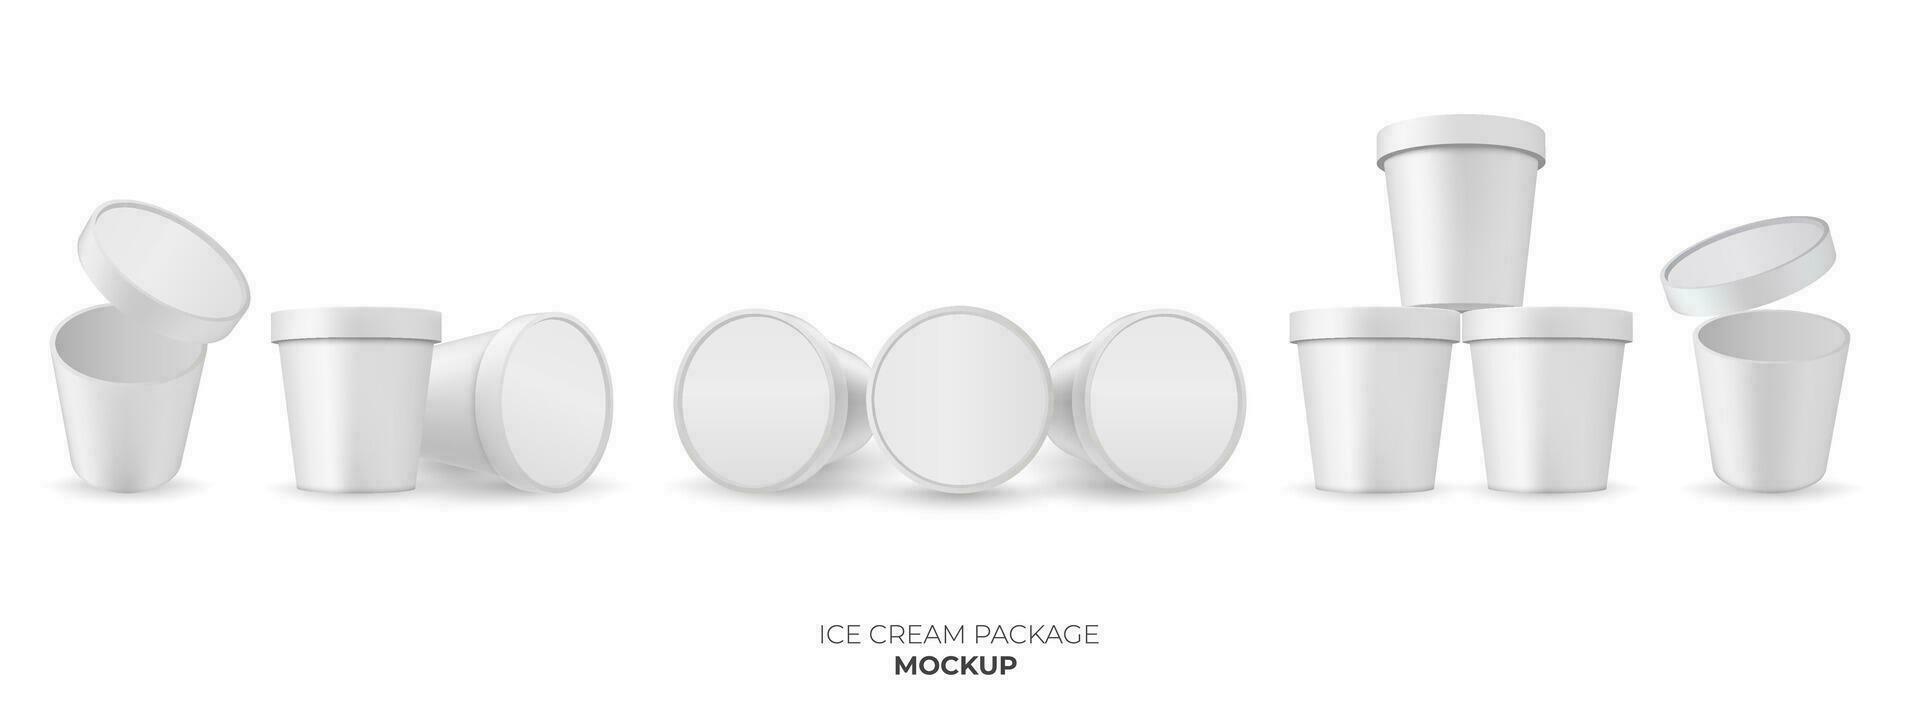 ein leer Weiß Joghurt oder Eis Sahne Container mit ein klar Plastik Deckel Satz. das sauber und glänzend Design ist perfekt zum Verpackung Modelle und Produkt Vorlagen. vektor